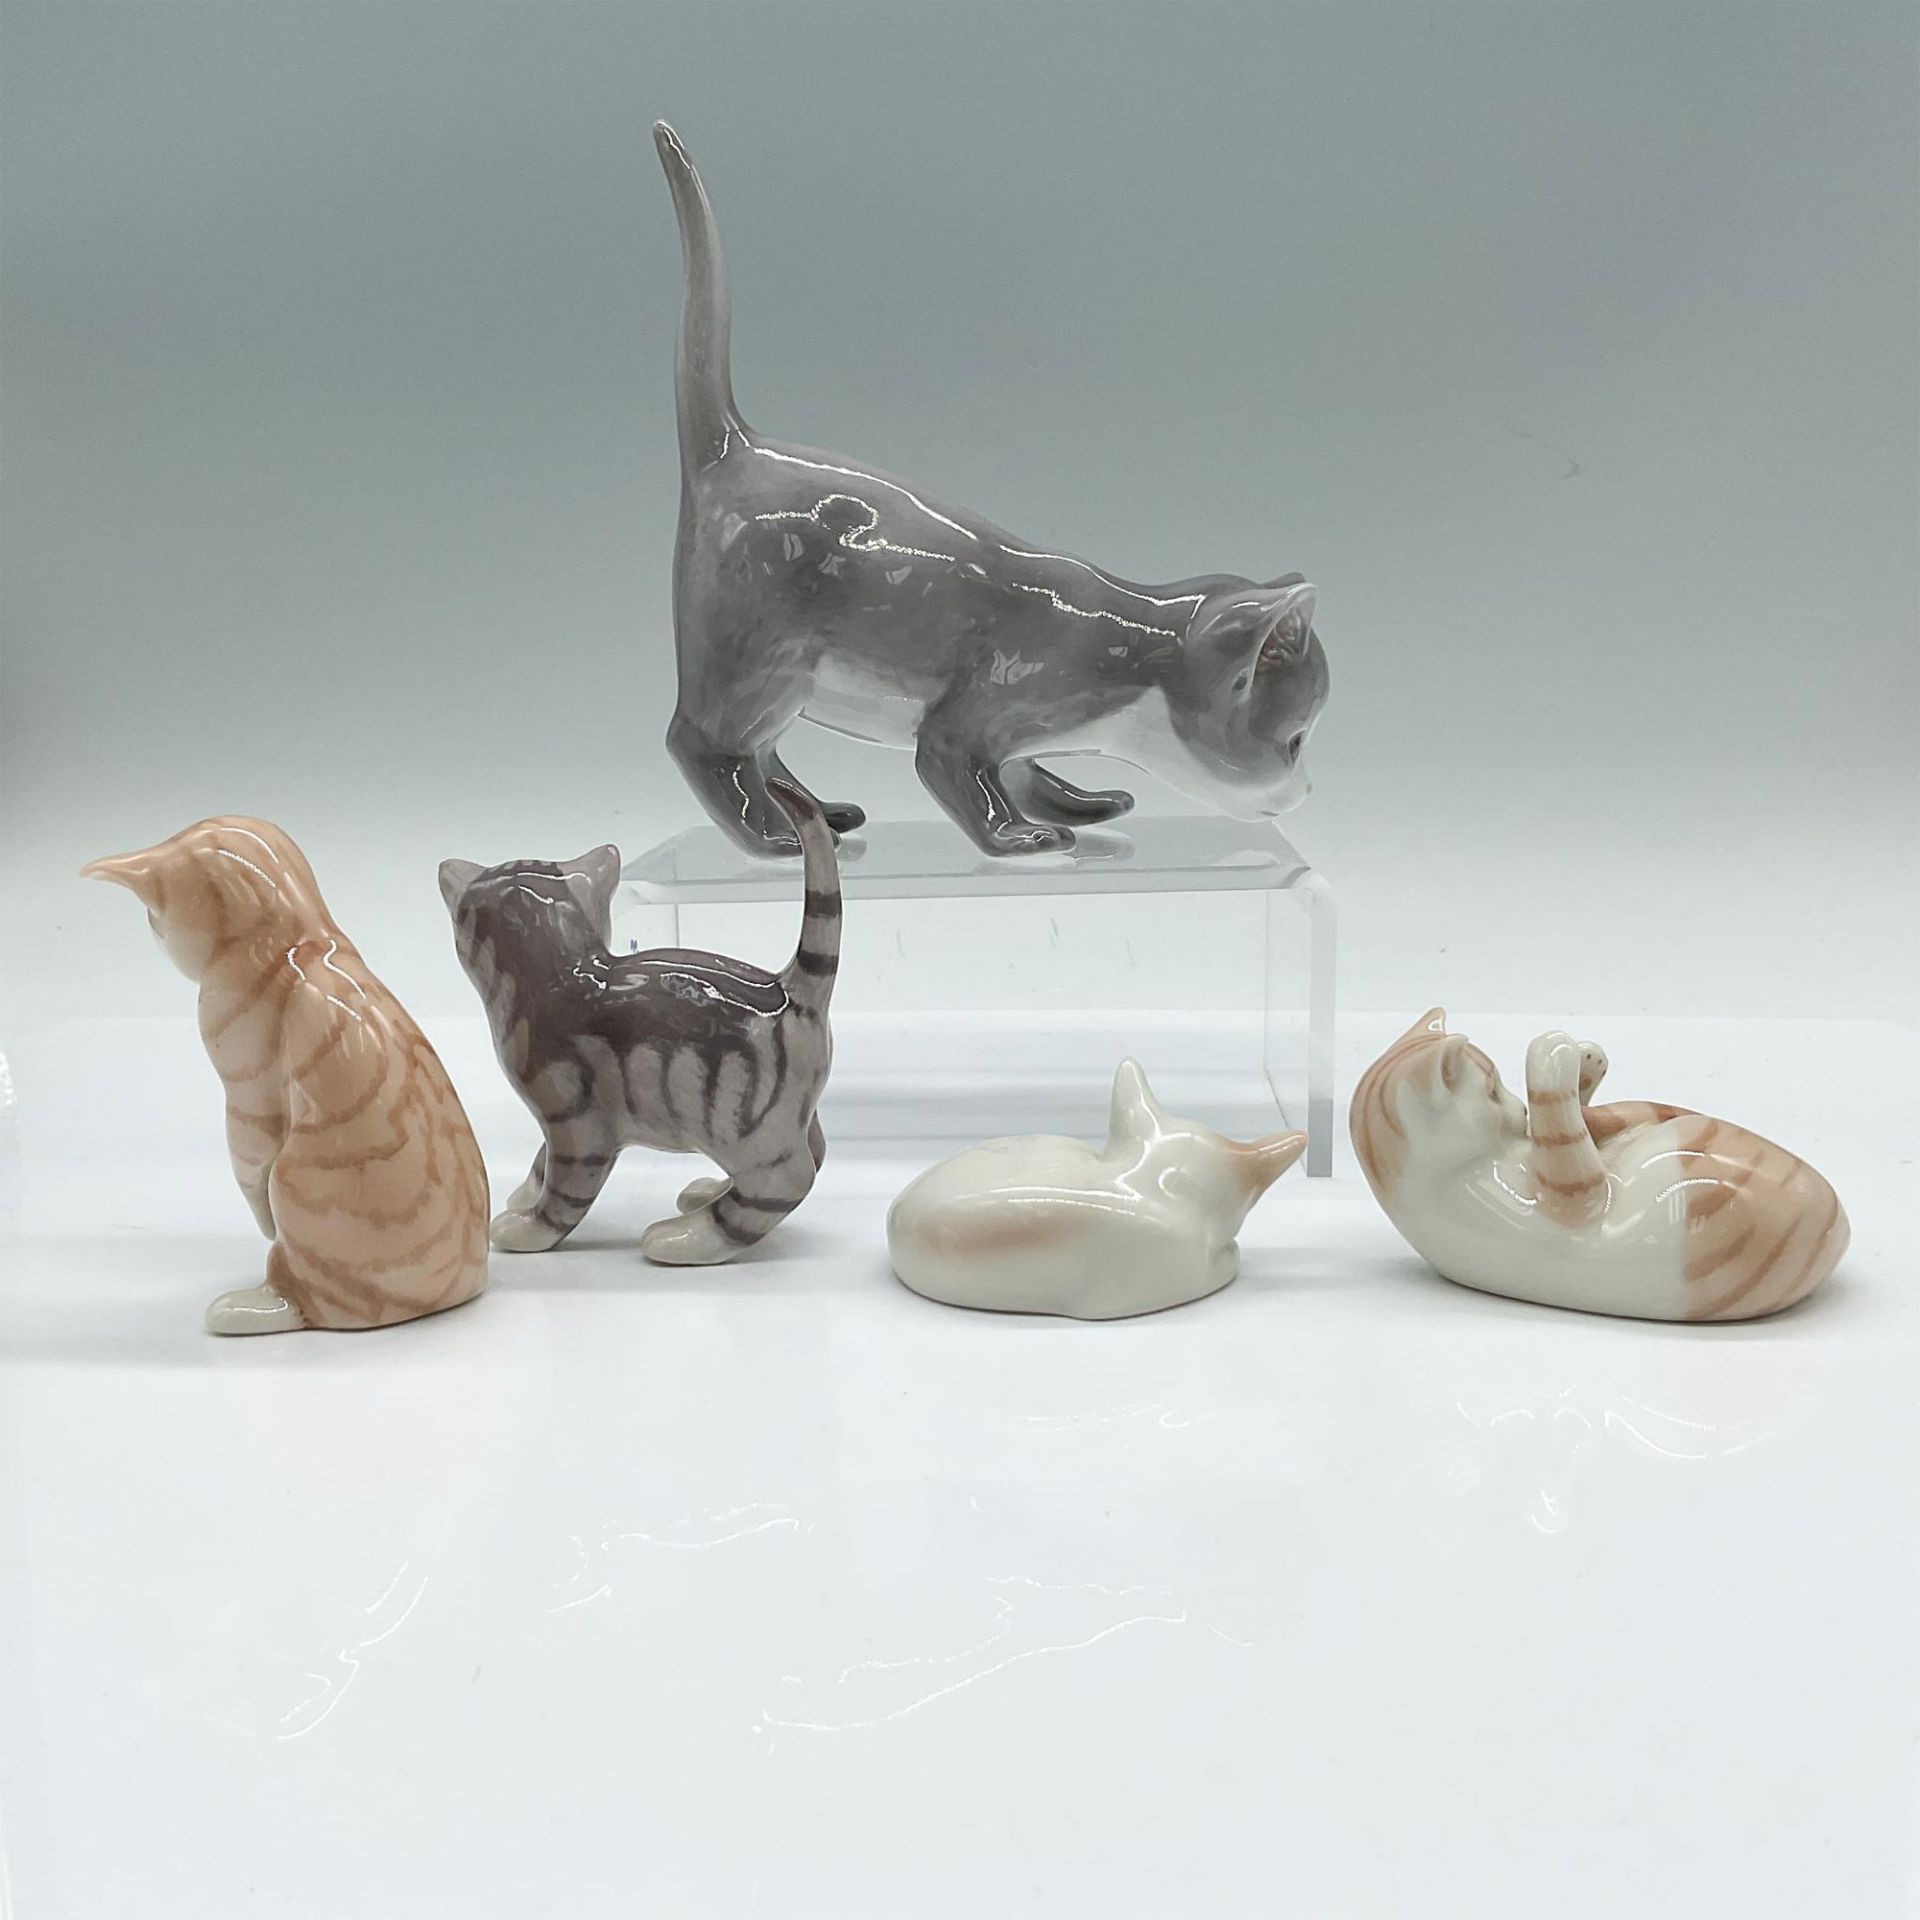 5pc Royal Copenhagen Porcelain Cat Figurines - Image 2 of 3